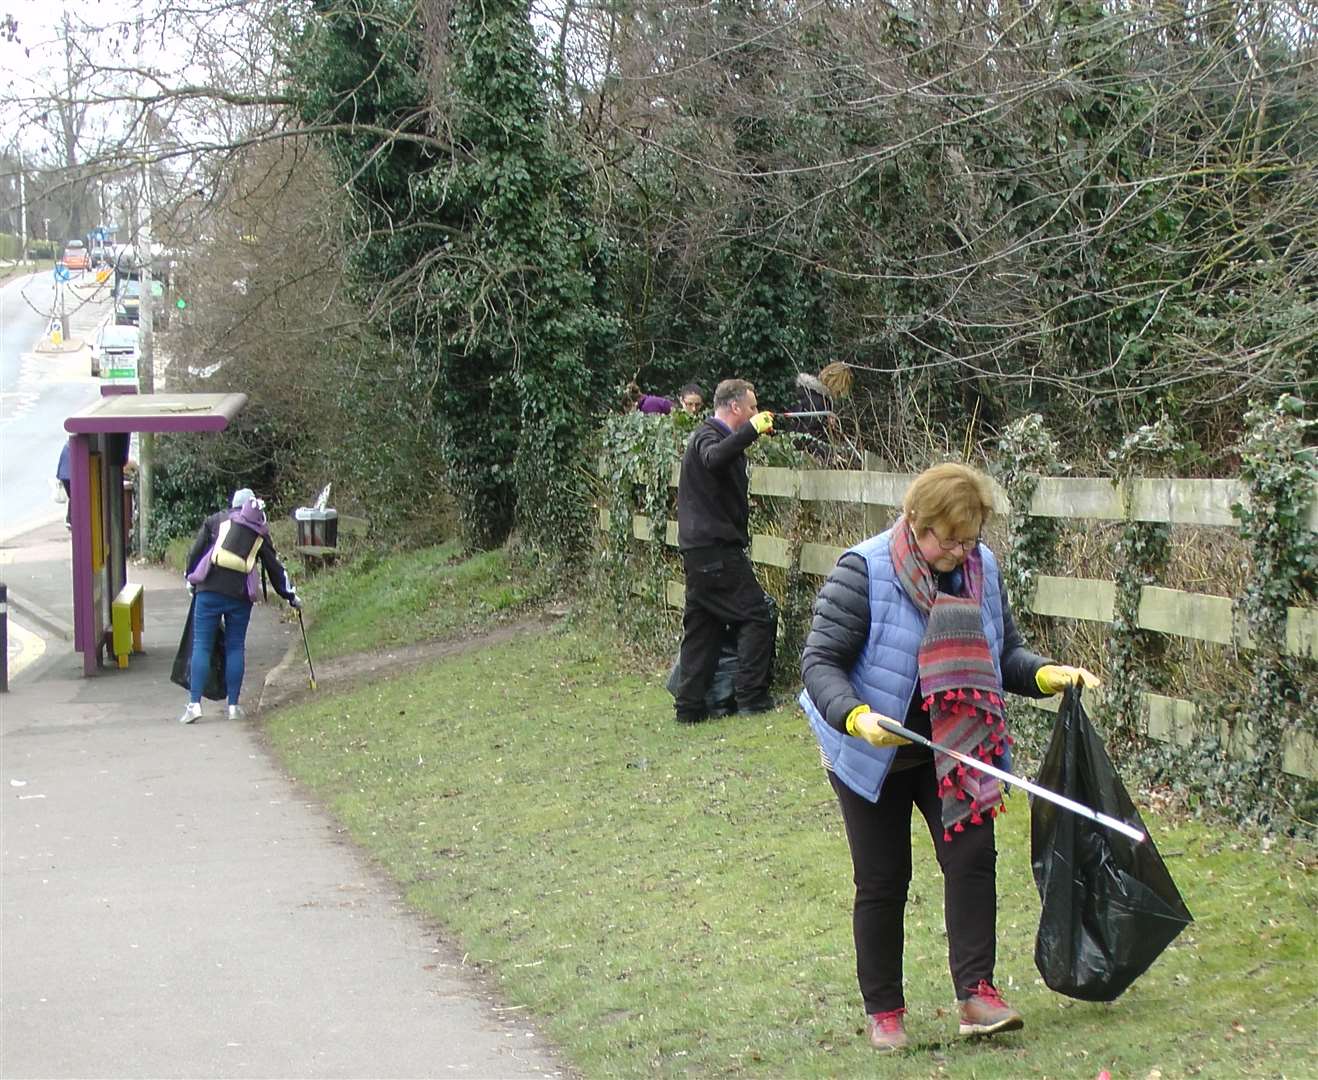 Last year's volunteers in Gillingham